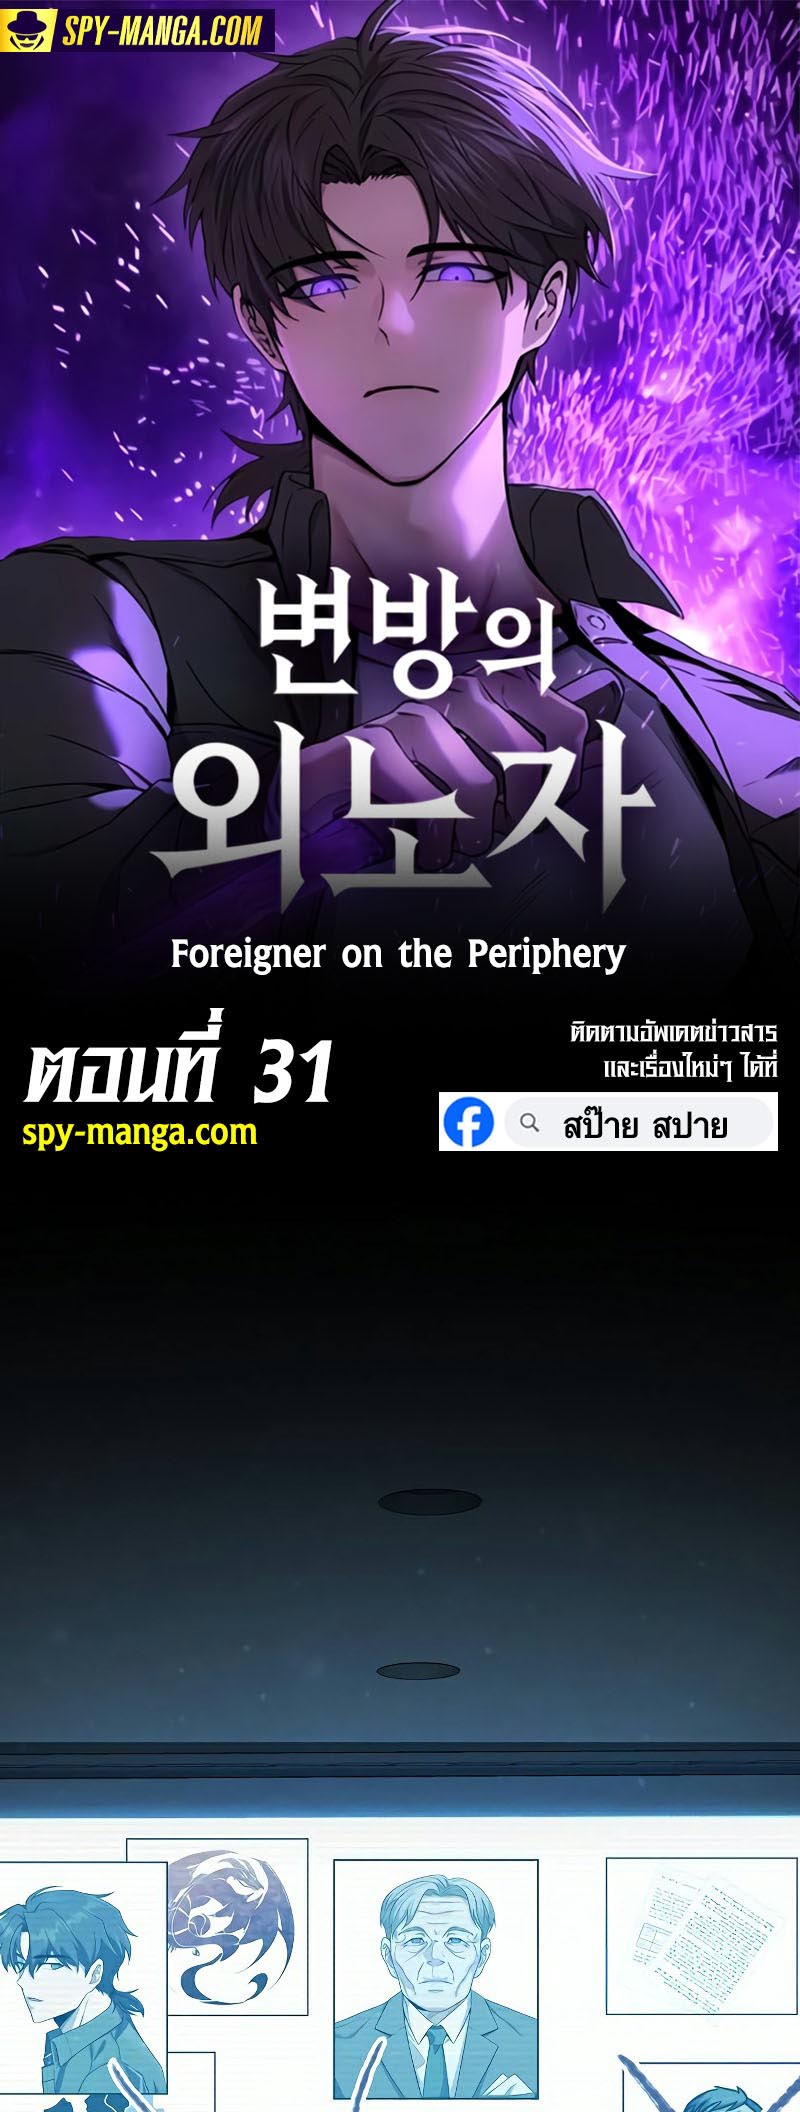 อ่านมันฮวา เรื่อง Foreigner on the Periphery 31 01